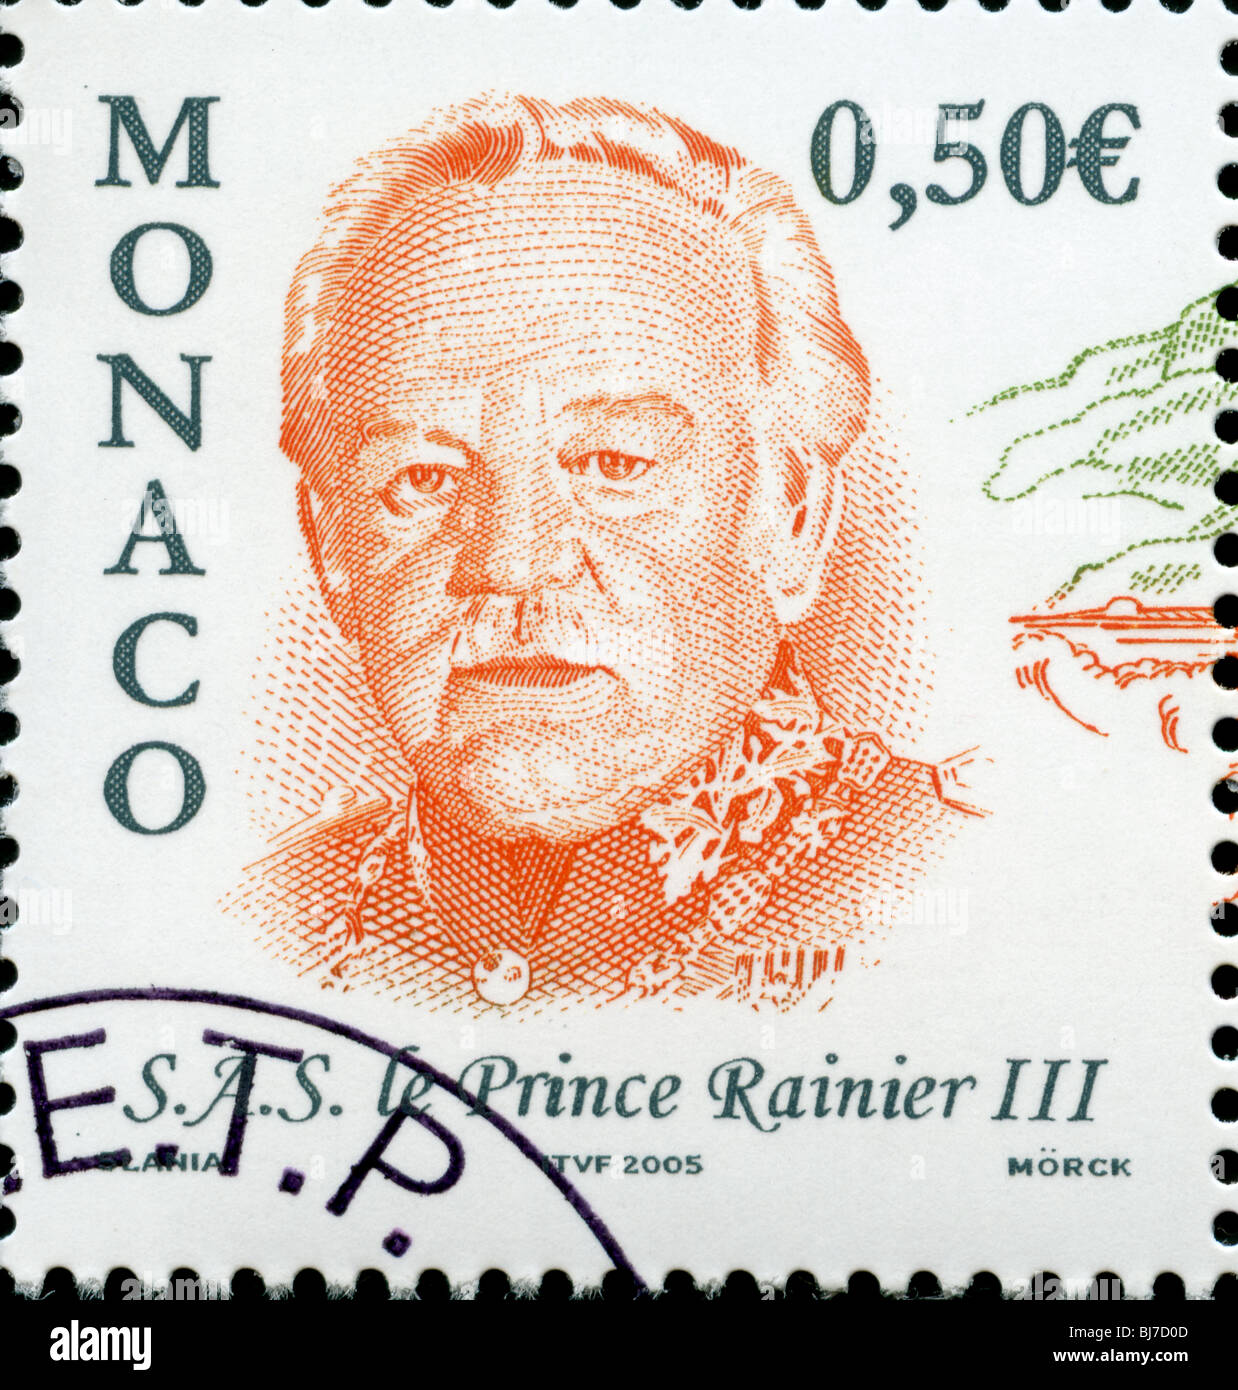 Monaco postage stamp Stock Photo